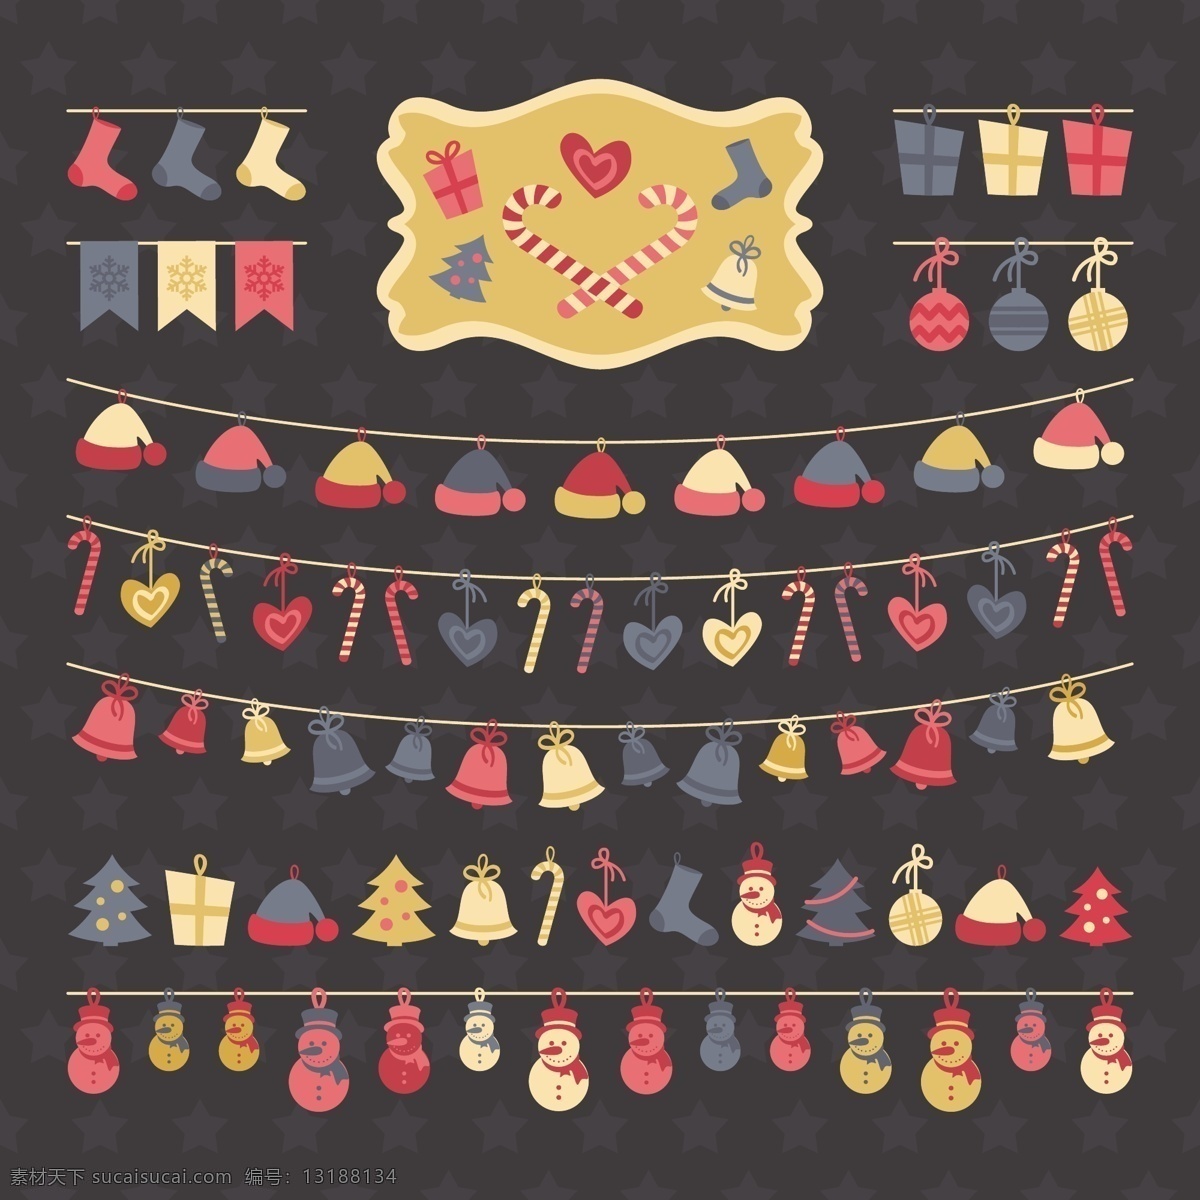 圣诞 彩旗 装饰 礼物 爱心 创意 个性 铃铛 圣诞帽 圣诞树 圣诞袜 装饰球 雪人 时尚 节日素材 圣诞节